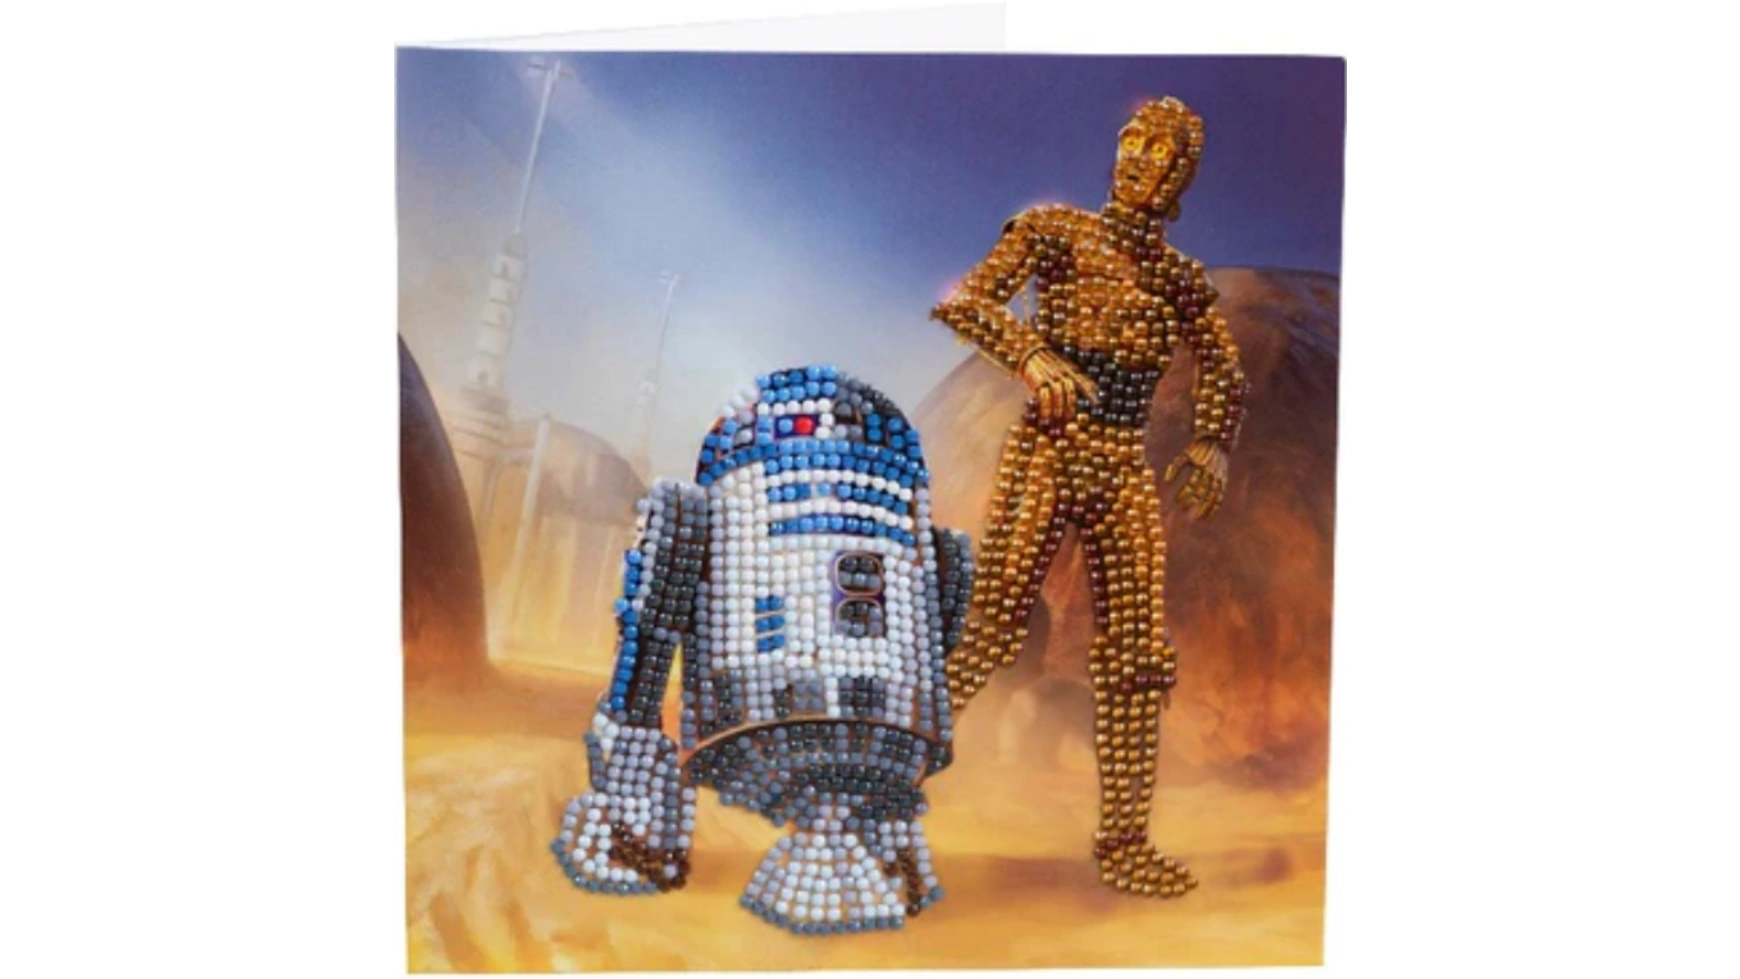 Craft Buddy Crystal Art Алмазная картина R2-D2 и C-3PO 18x18см Кристаллическая художественная открытка набор креативного тв ва crystal art бабочки 323725